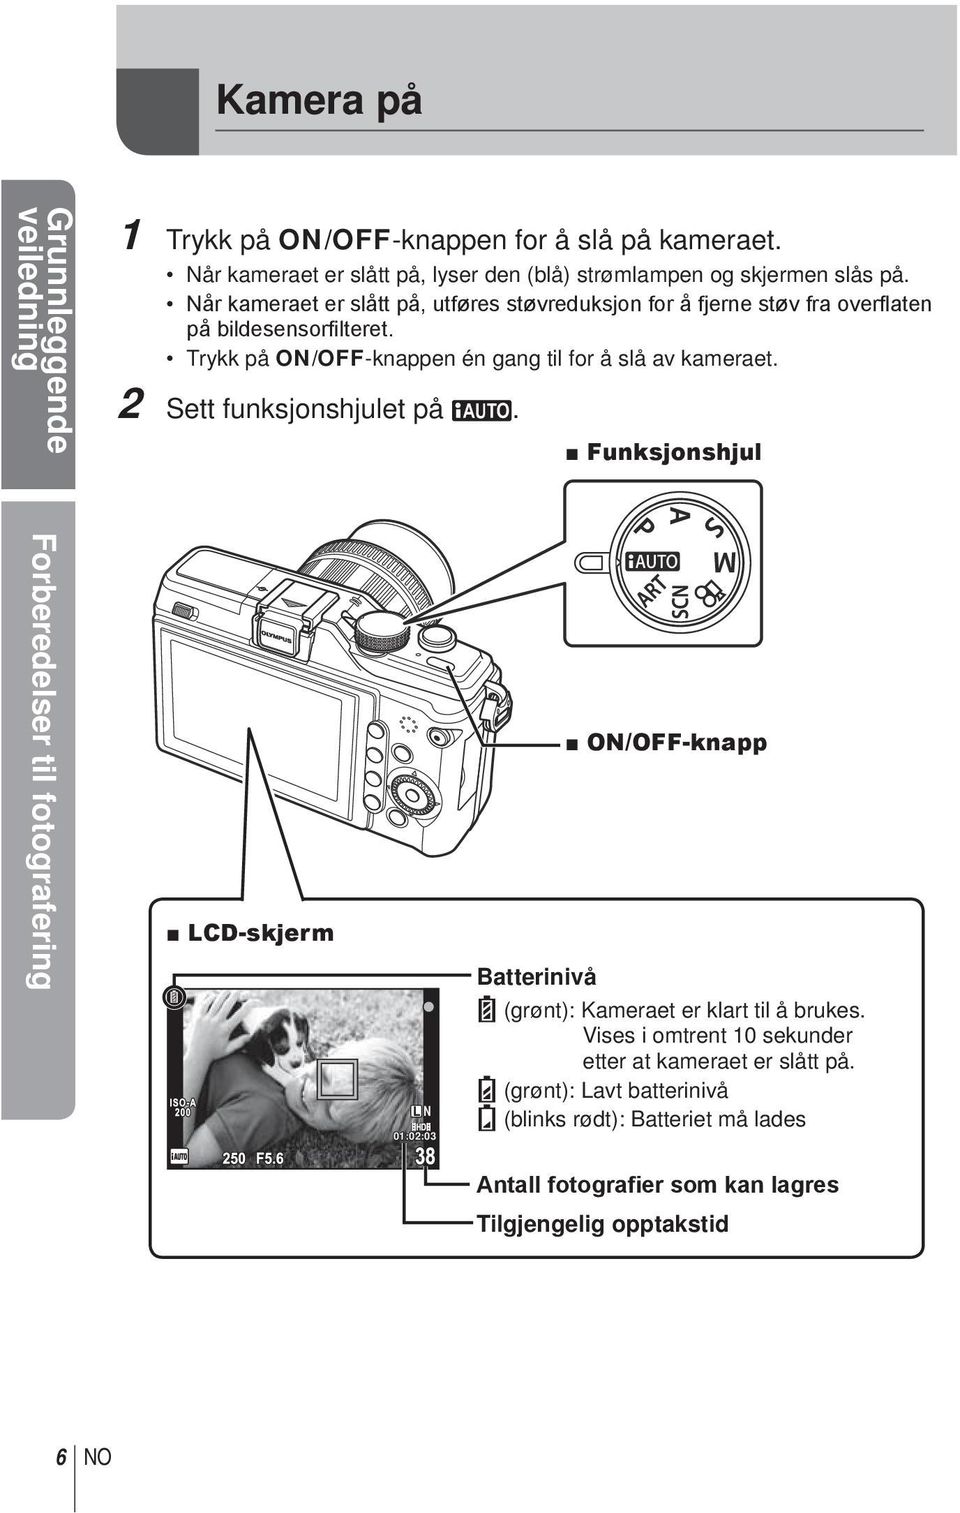 2 Sett funksjonshjulet på h. Funksjonshjul Forberedelser til fotografering LCD-skjerm L N 01:02:03 Batterinivå ON/OFF-knapp ; (grønt): Kameraet er klart til å brukes.